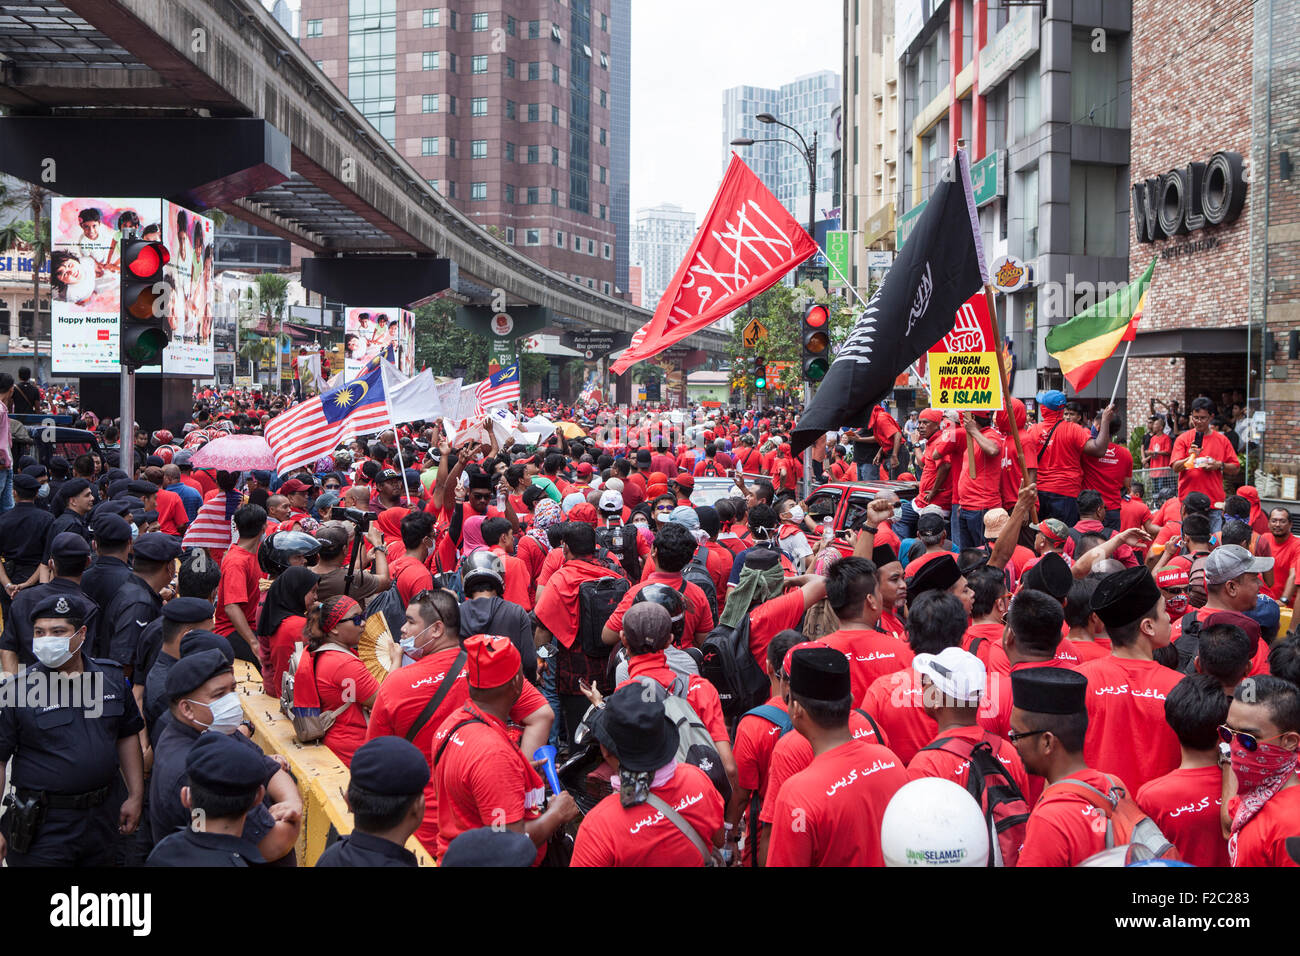 Kuala Lumpur, Malasia. 16 Sep, 2015. Pro-gobierno camiseta roja manifestantes tomar parte en una manifestación en Kuala Lumpur, Malasia, el miércoles 16 de septiembre, 2015. Miles de manifestantes pro-Malayo salieron a las calles de Kuala Lumpur, el miércoles en una manifestación considerada como promoción de supremacía malaya en la nación multi-racial. Destacadas figuras políticas y partidos de oposición expresaron preocupación el rallye podría inflamar las tensiones raciales en un momento en el que el Primer Ministro Najib Razak está sometida a una intensa presión para dimitir por un supuesto escándalo de corrupción. Crédito: Archivo Asia/Alamy Live News Foto de stock